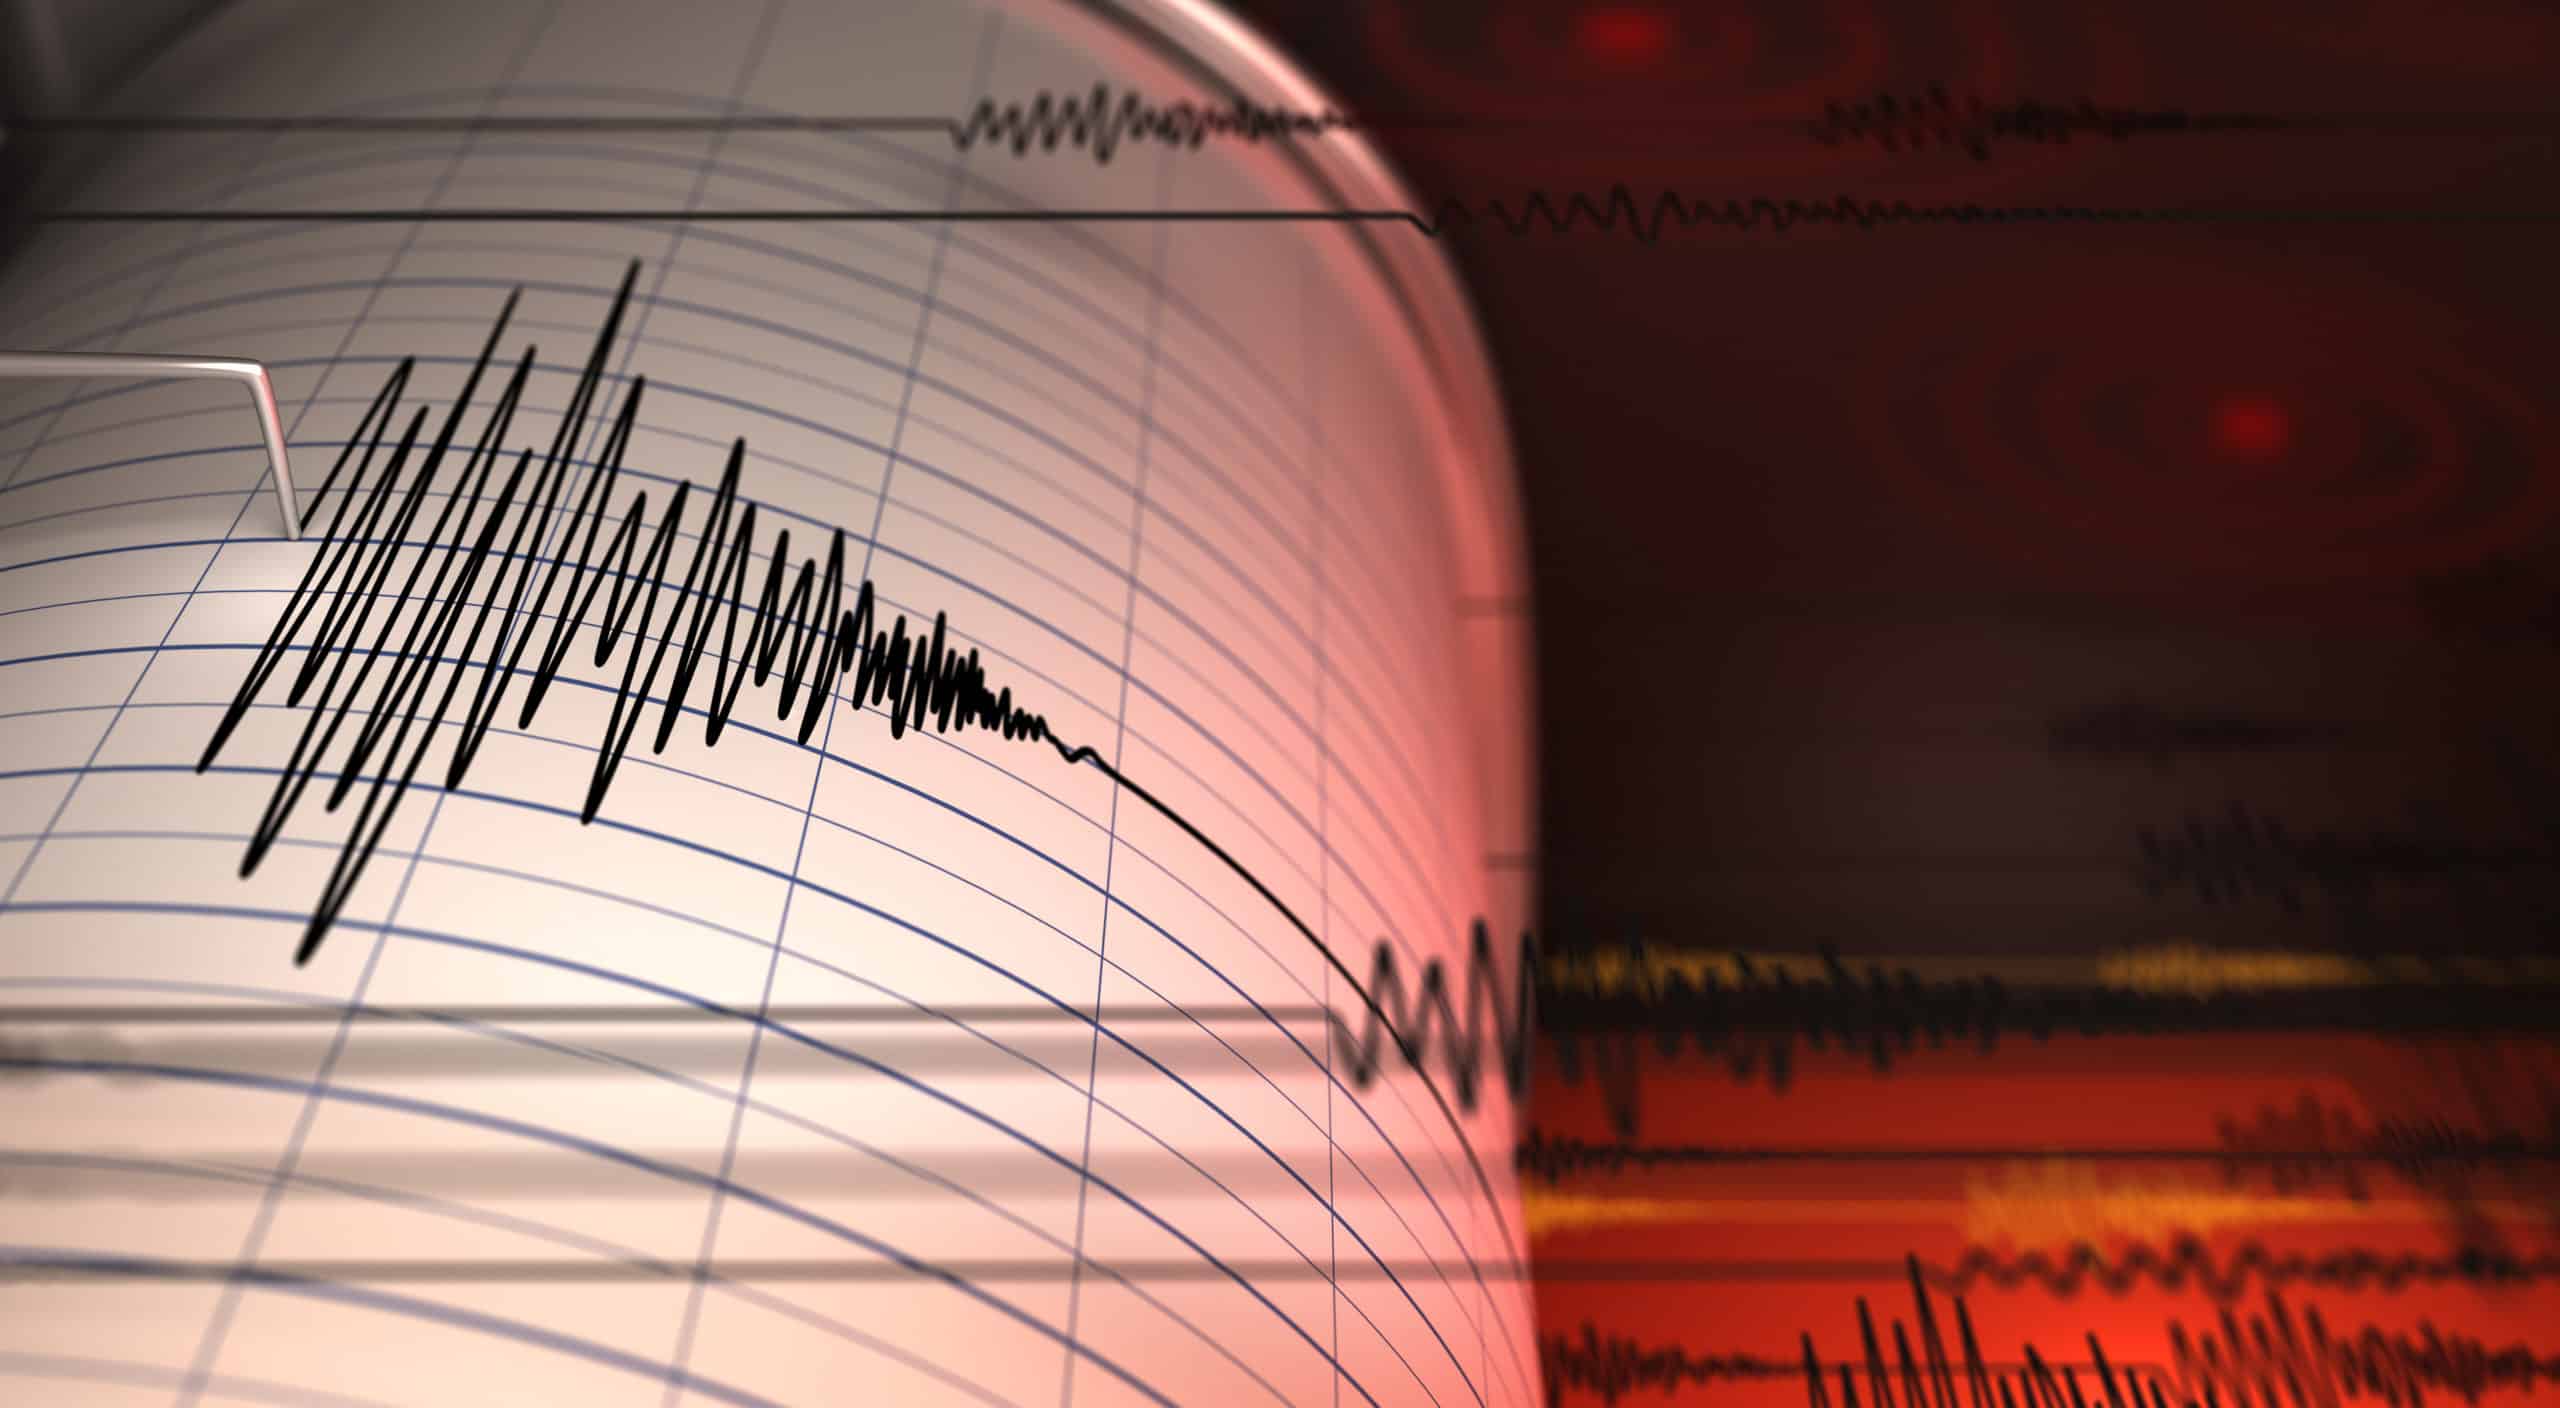 רעידת אדמה חזקה הורגשה בישראל | צפו